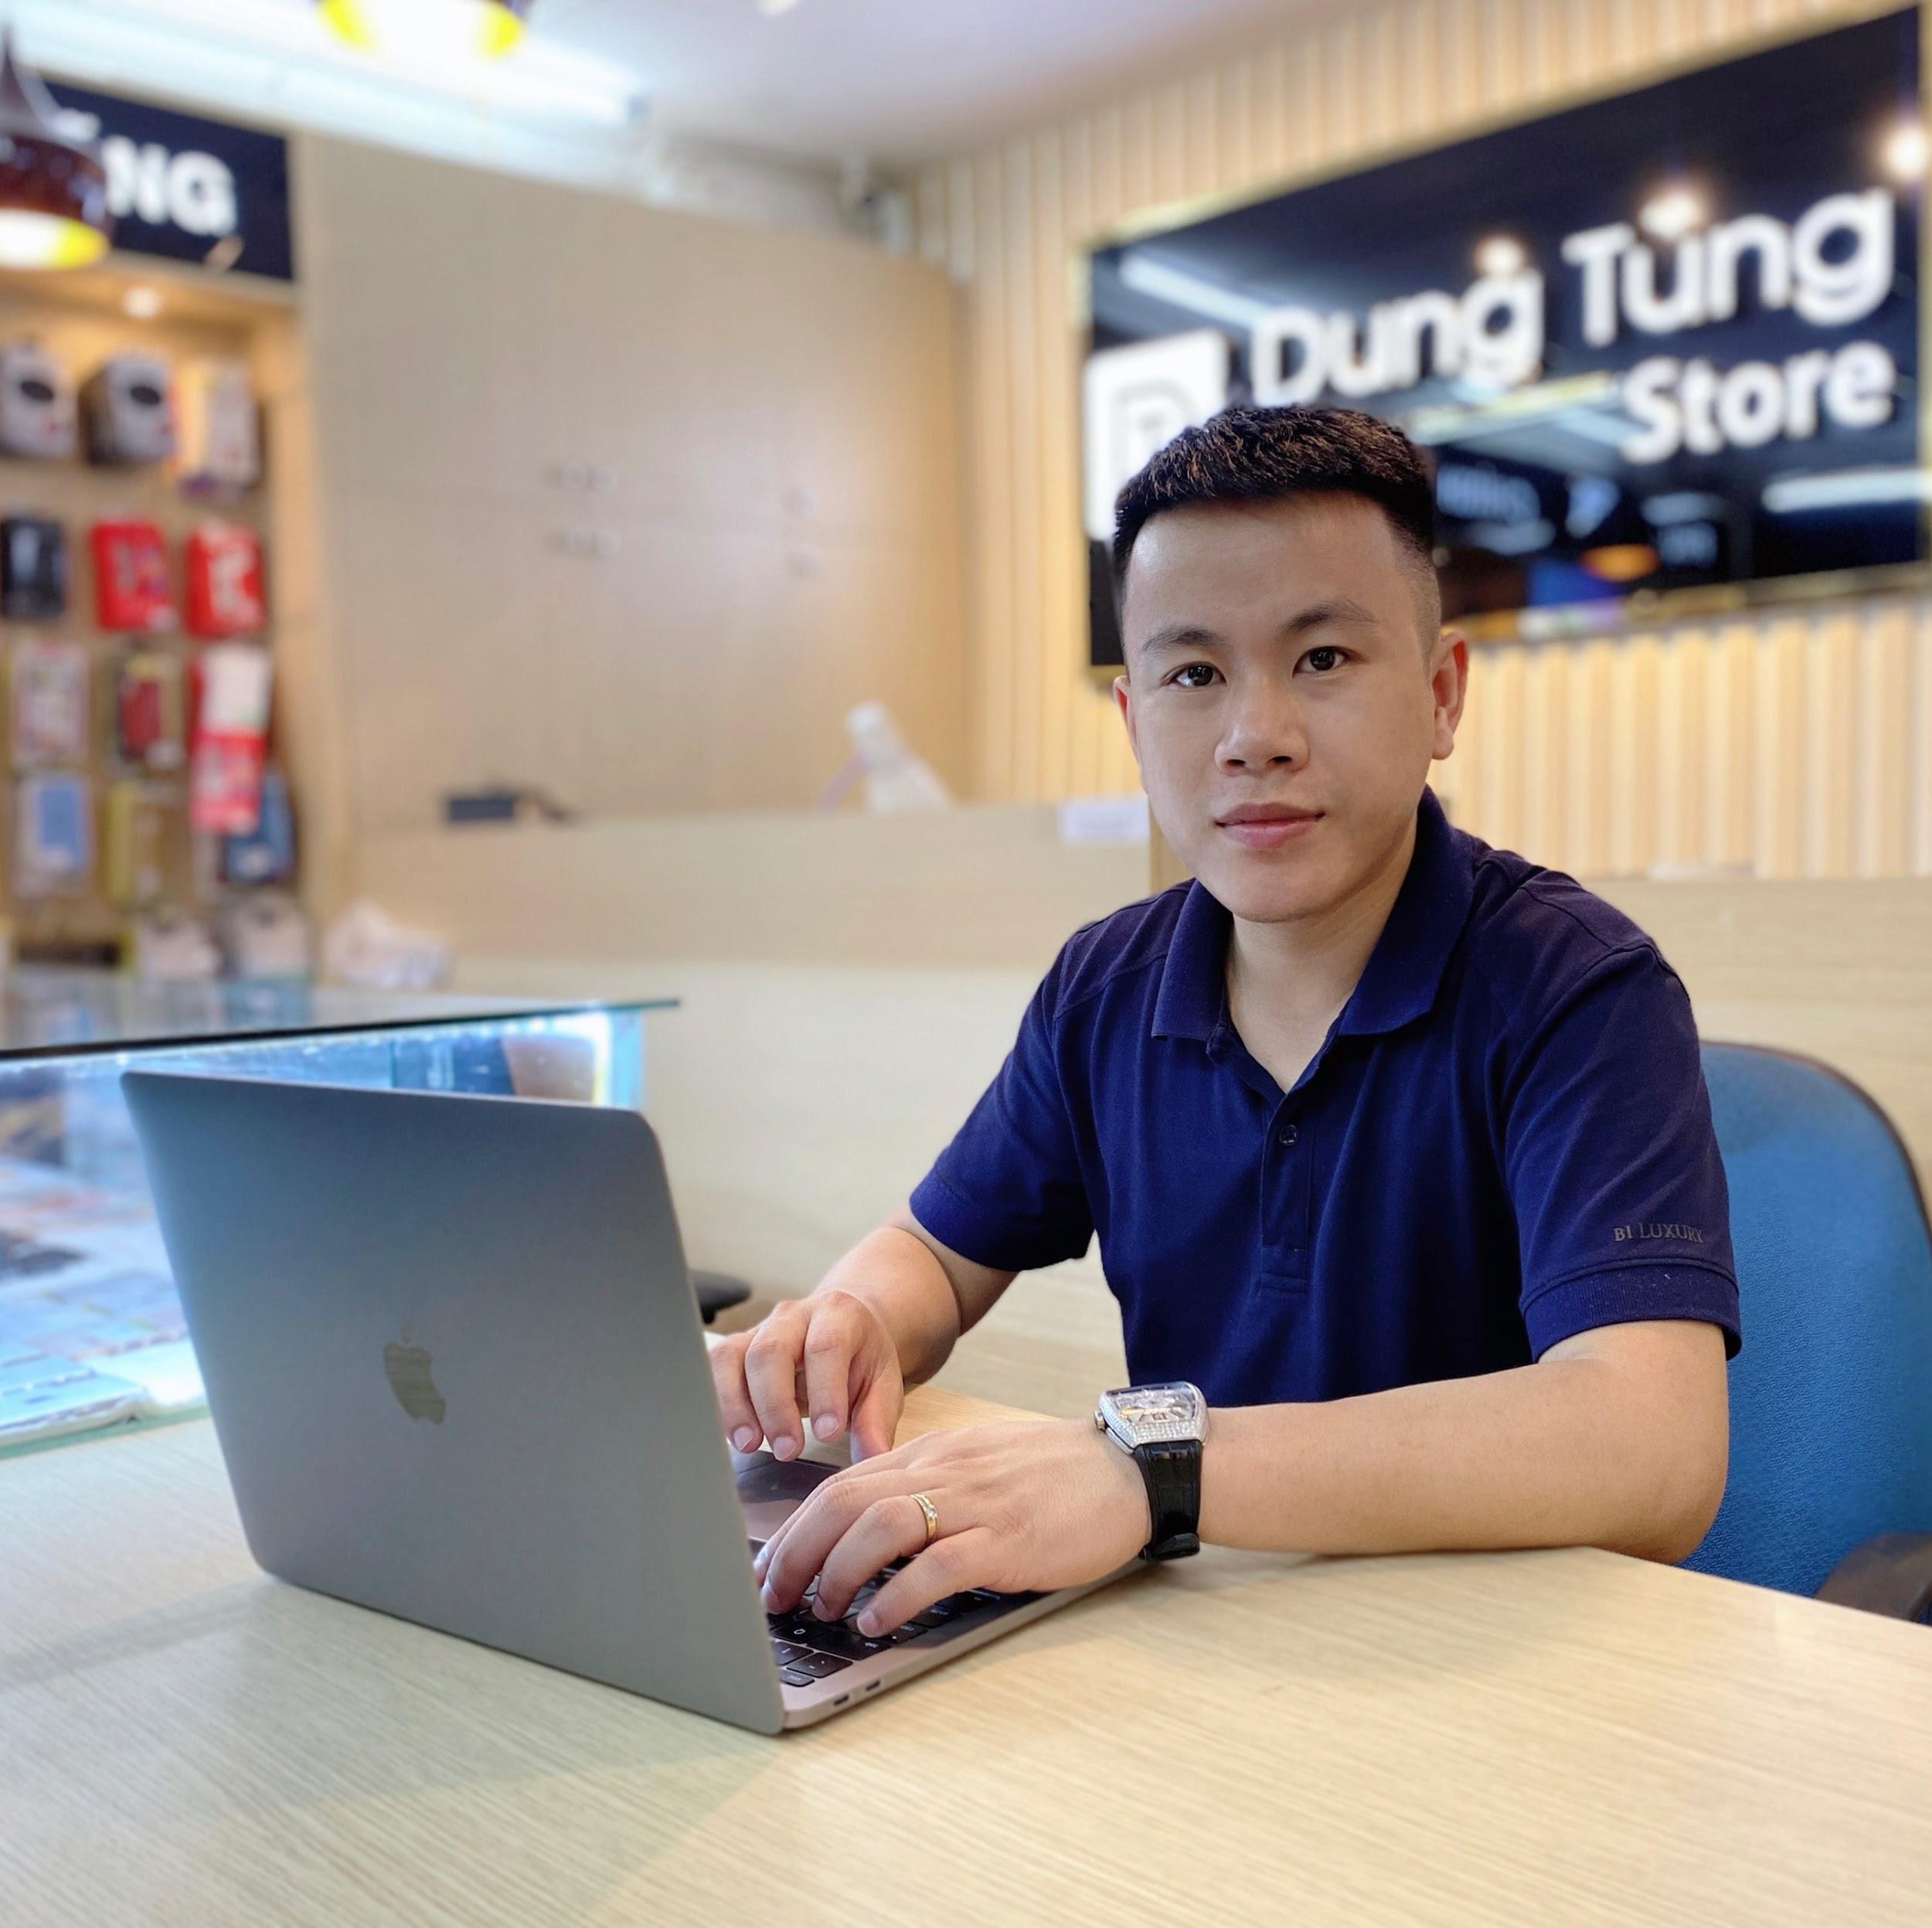 CEO Phạm Thanh Tùng và hành trình xây dựng thương hiệu Dung Tùng Store uy tín.